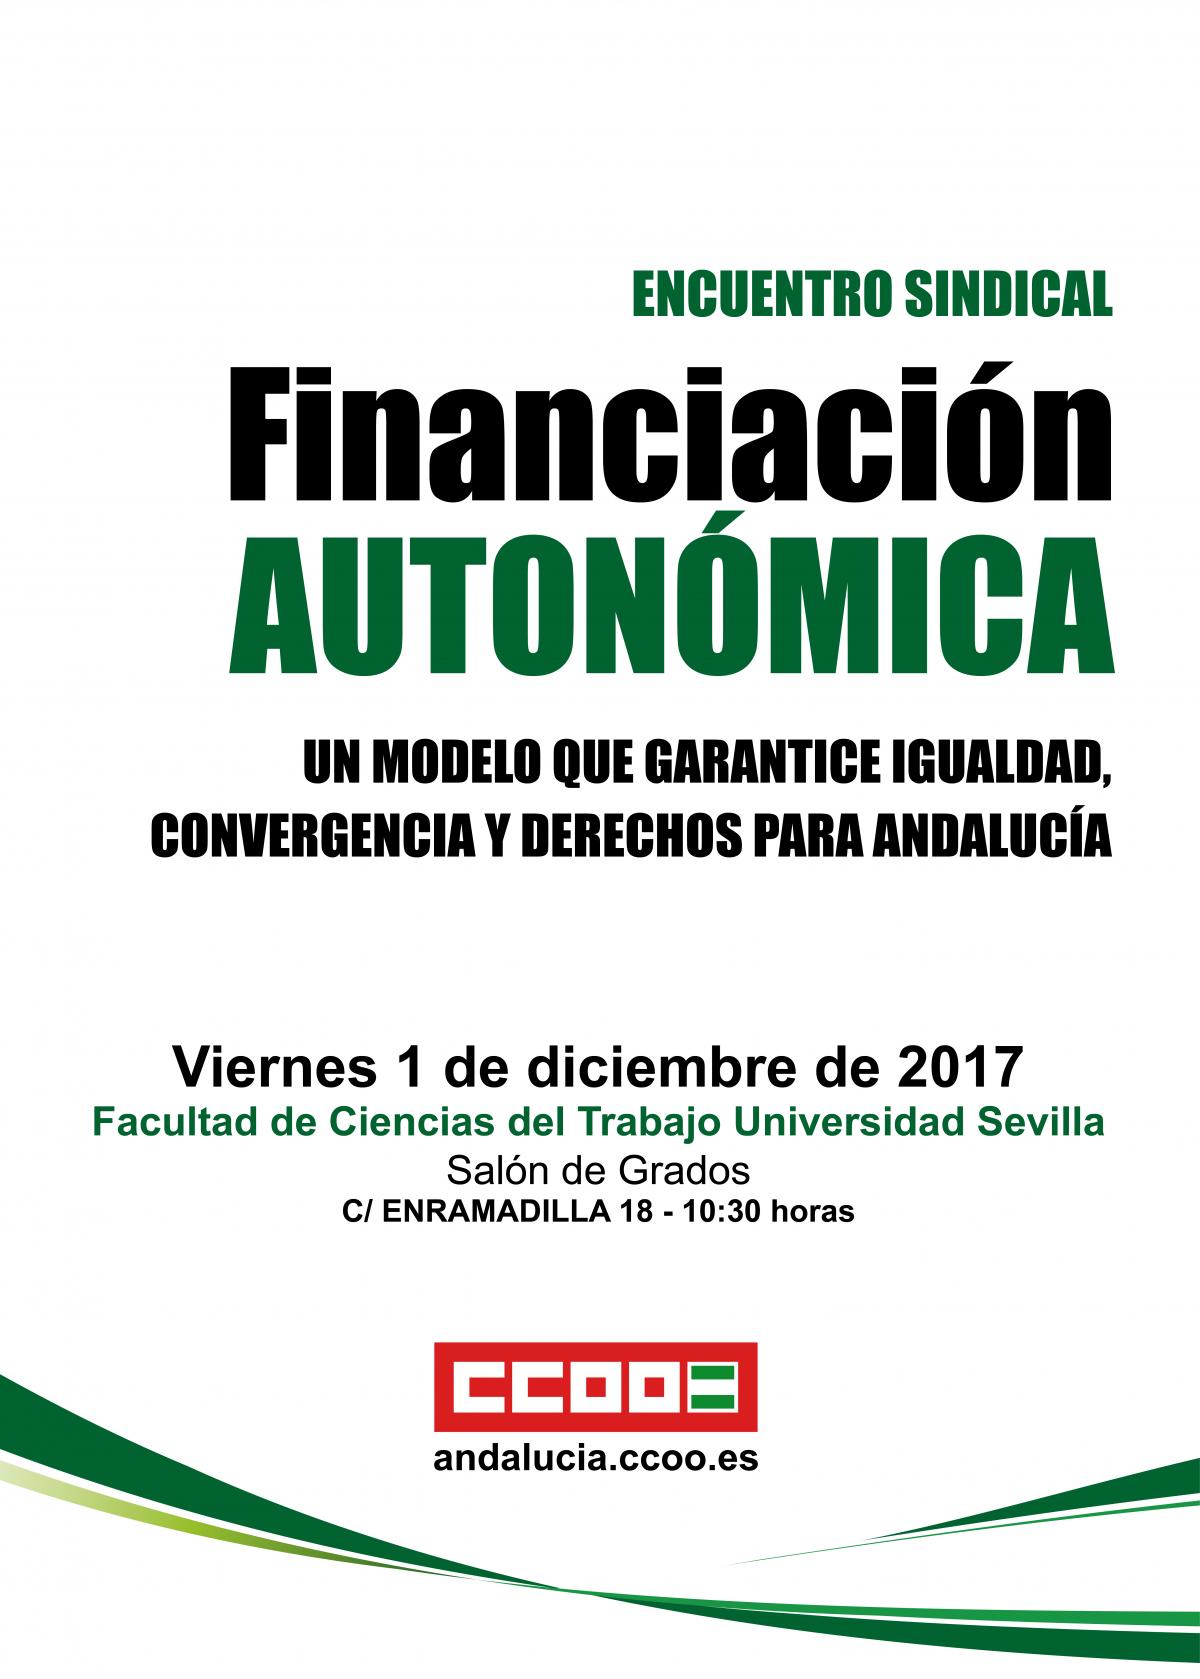 Portada programa encuentro sindical sobre financiación autonómica 2017